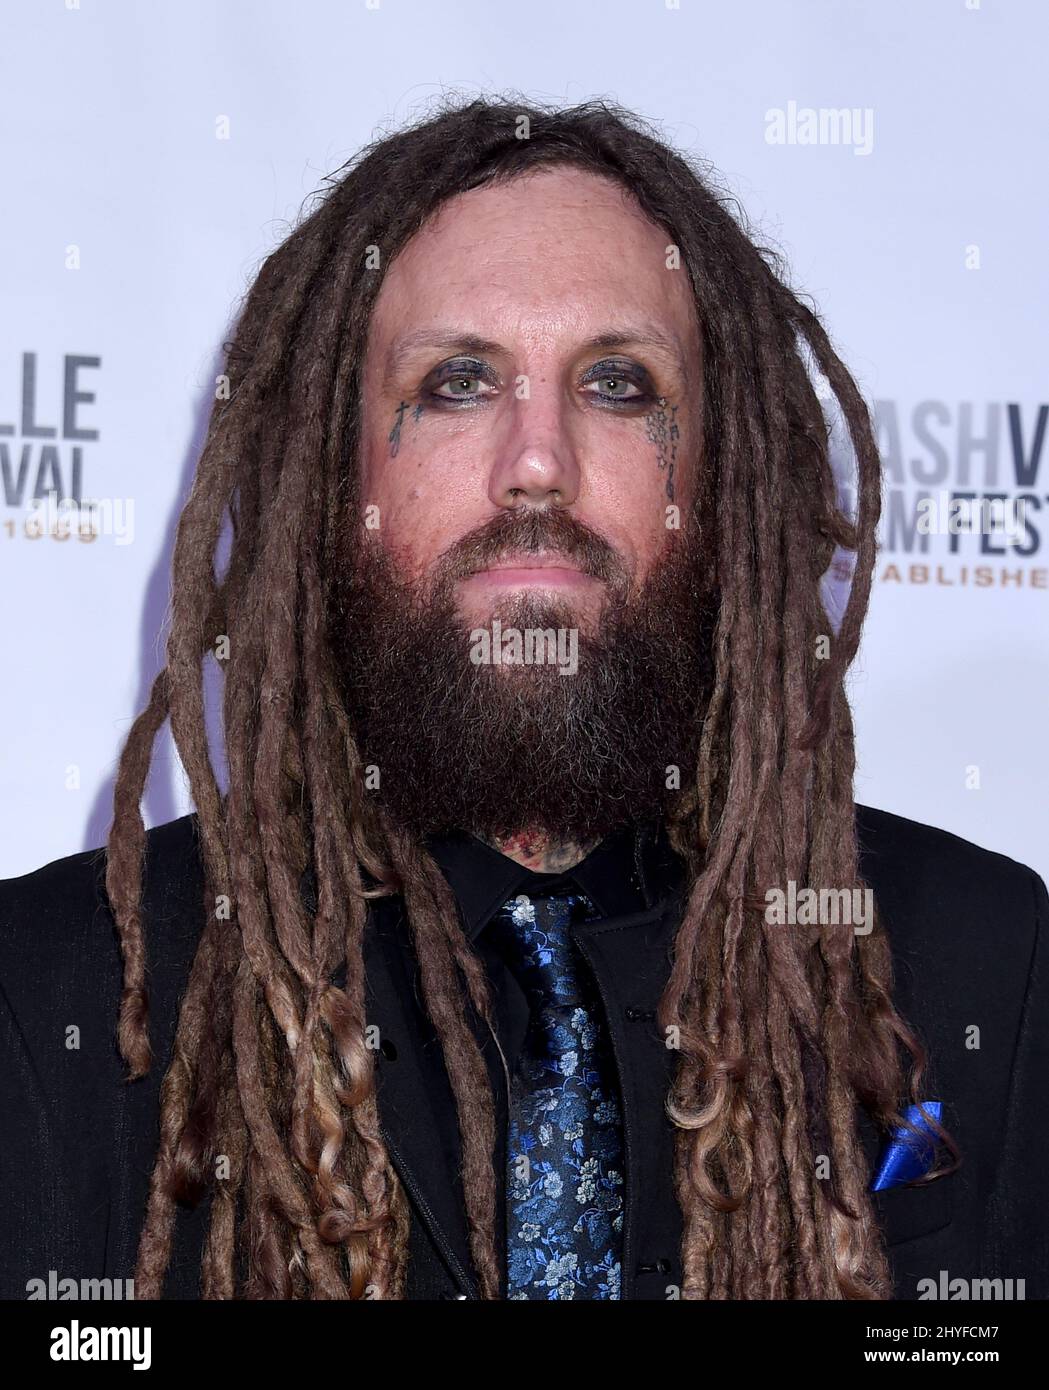 Brian Welch della band Korn partecipa alla proiezione di 'Loud Krazy Love' durante il Nashville Film Festival tenuto al Regal 27 Hollywood Theatre il 11 maggio 2018 a Nashville, Tennessee Foto Stock